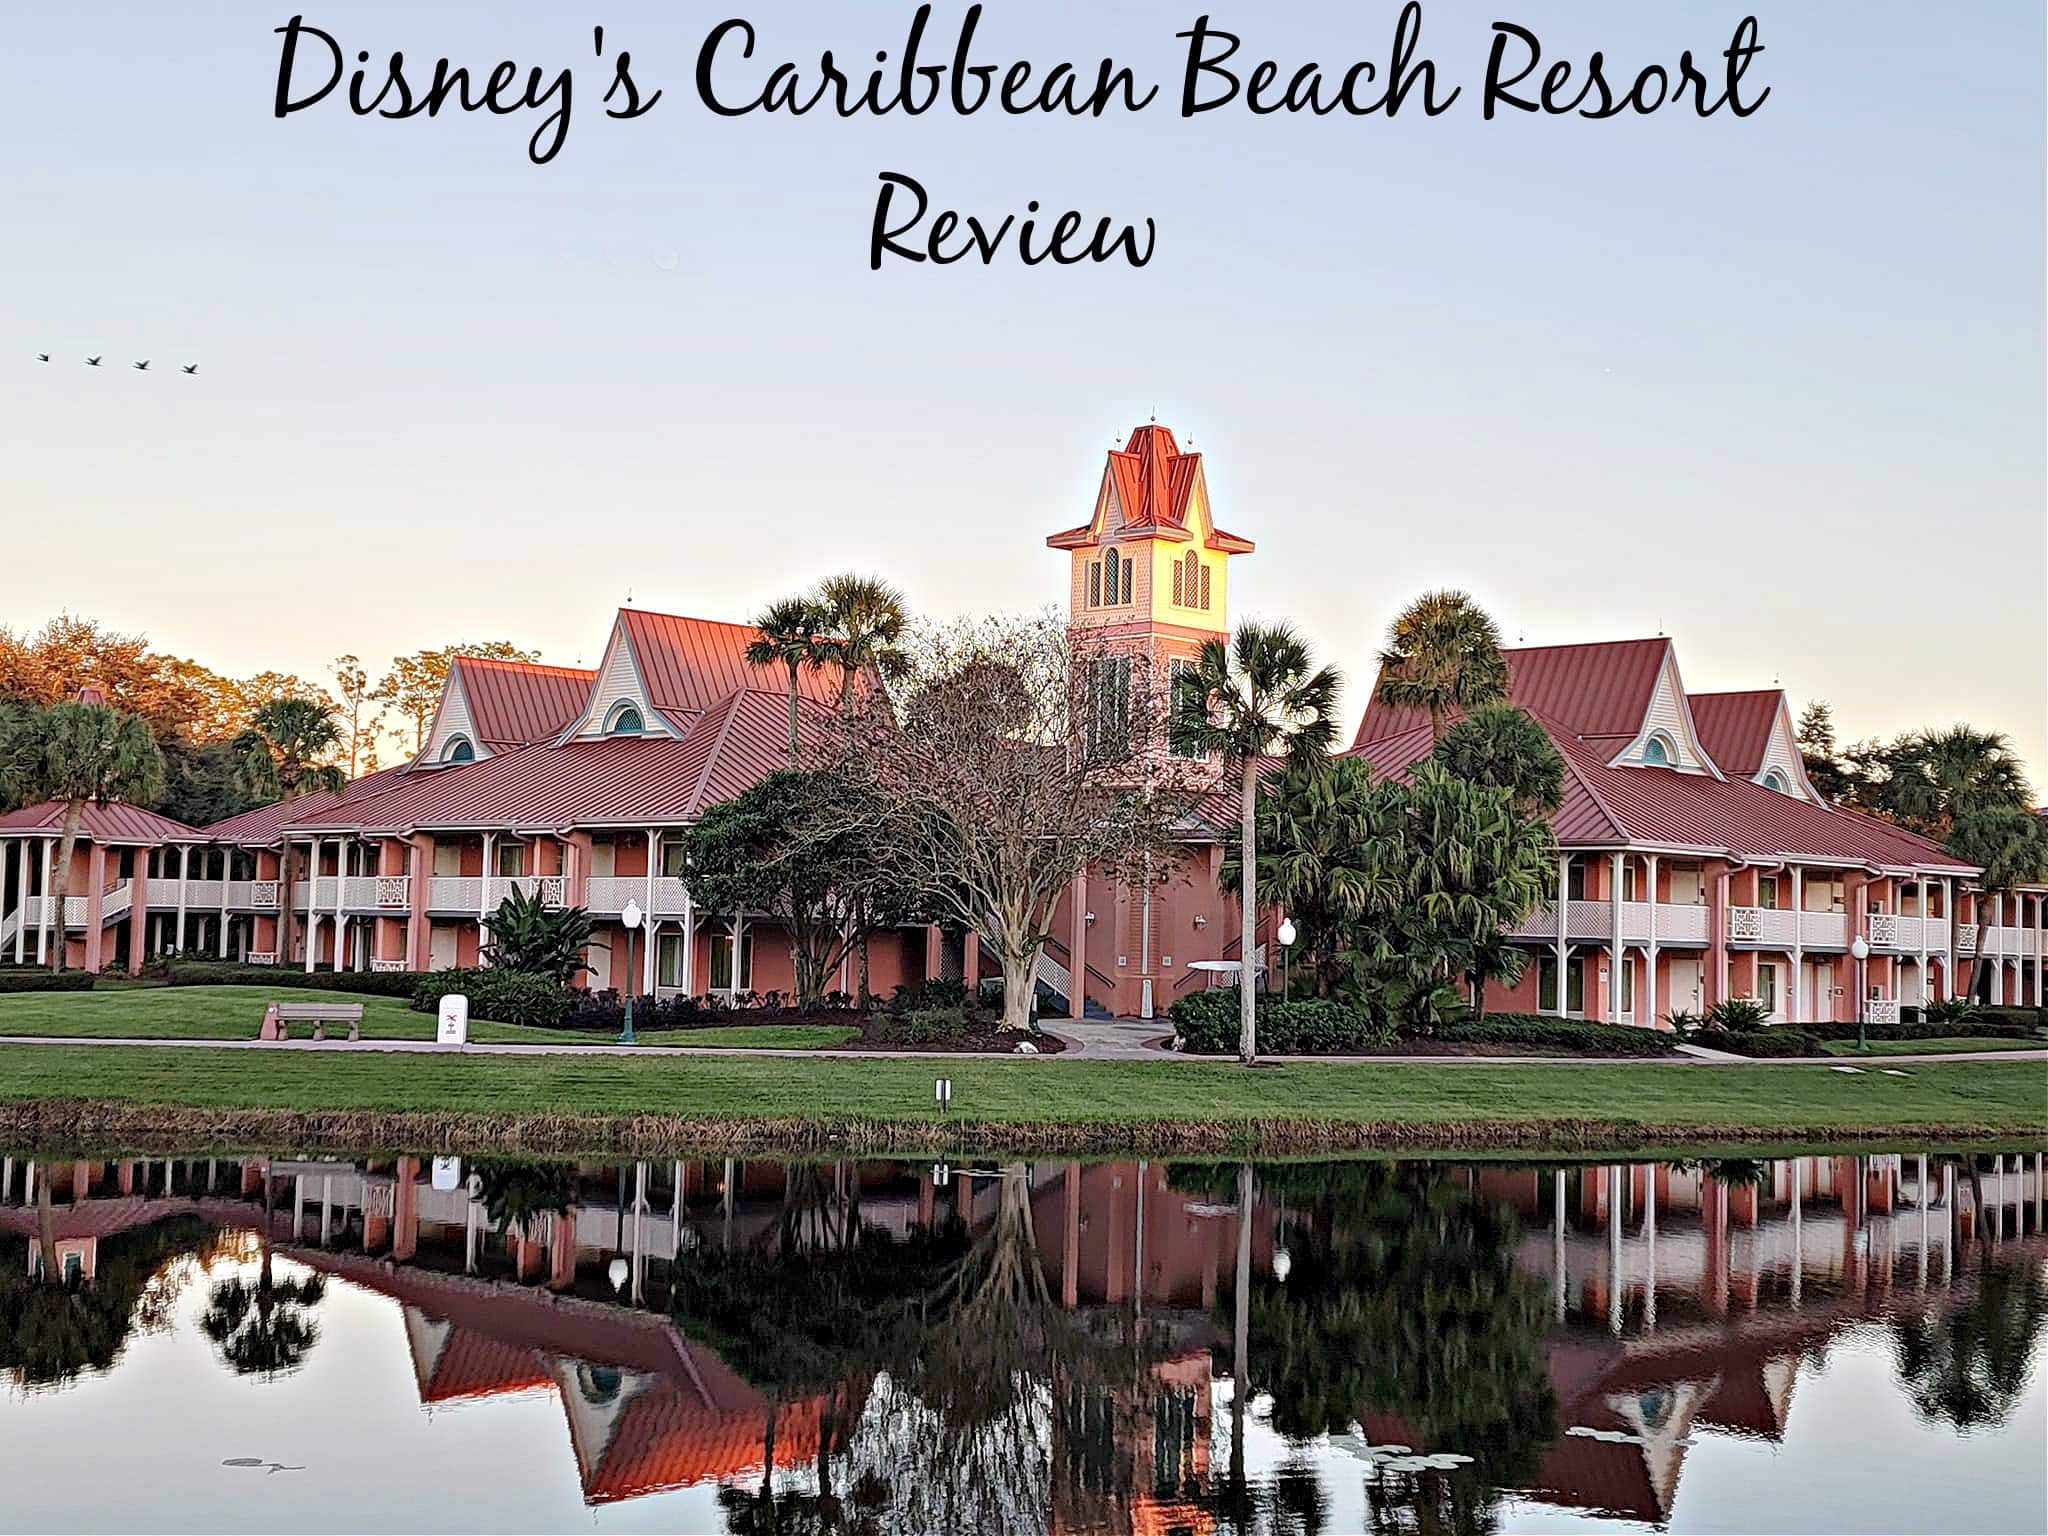 Disney’s Caribbean Beach Resort Review